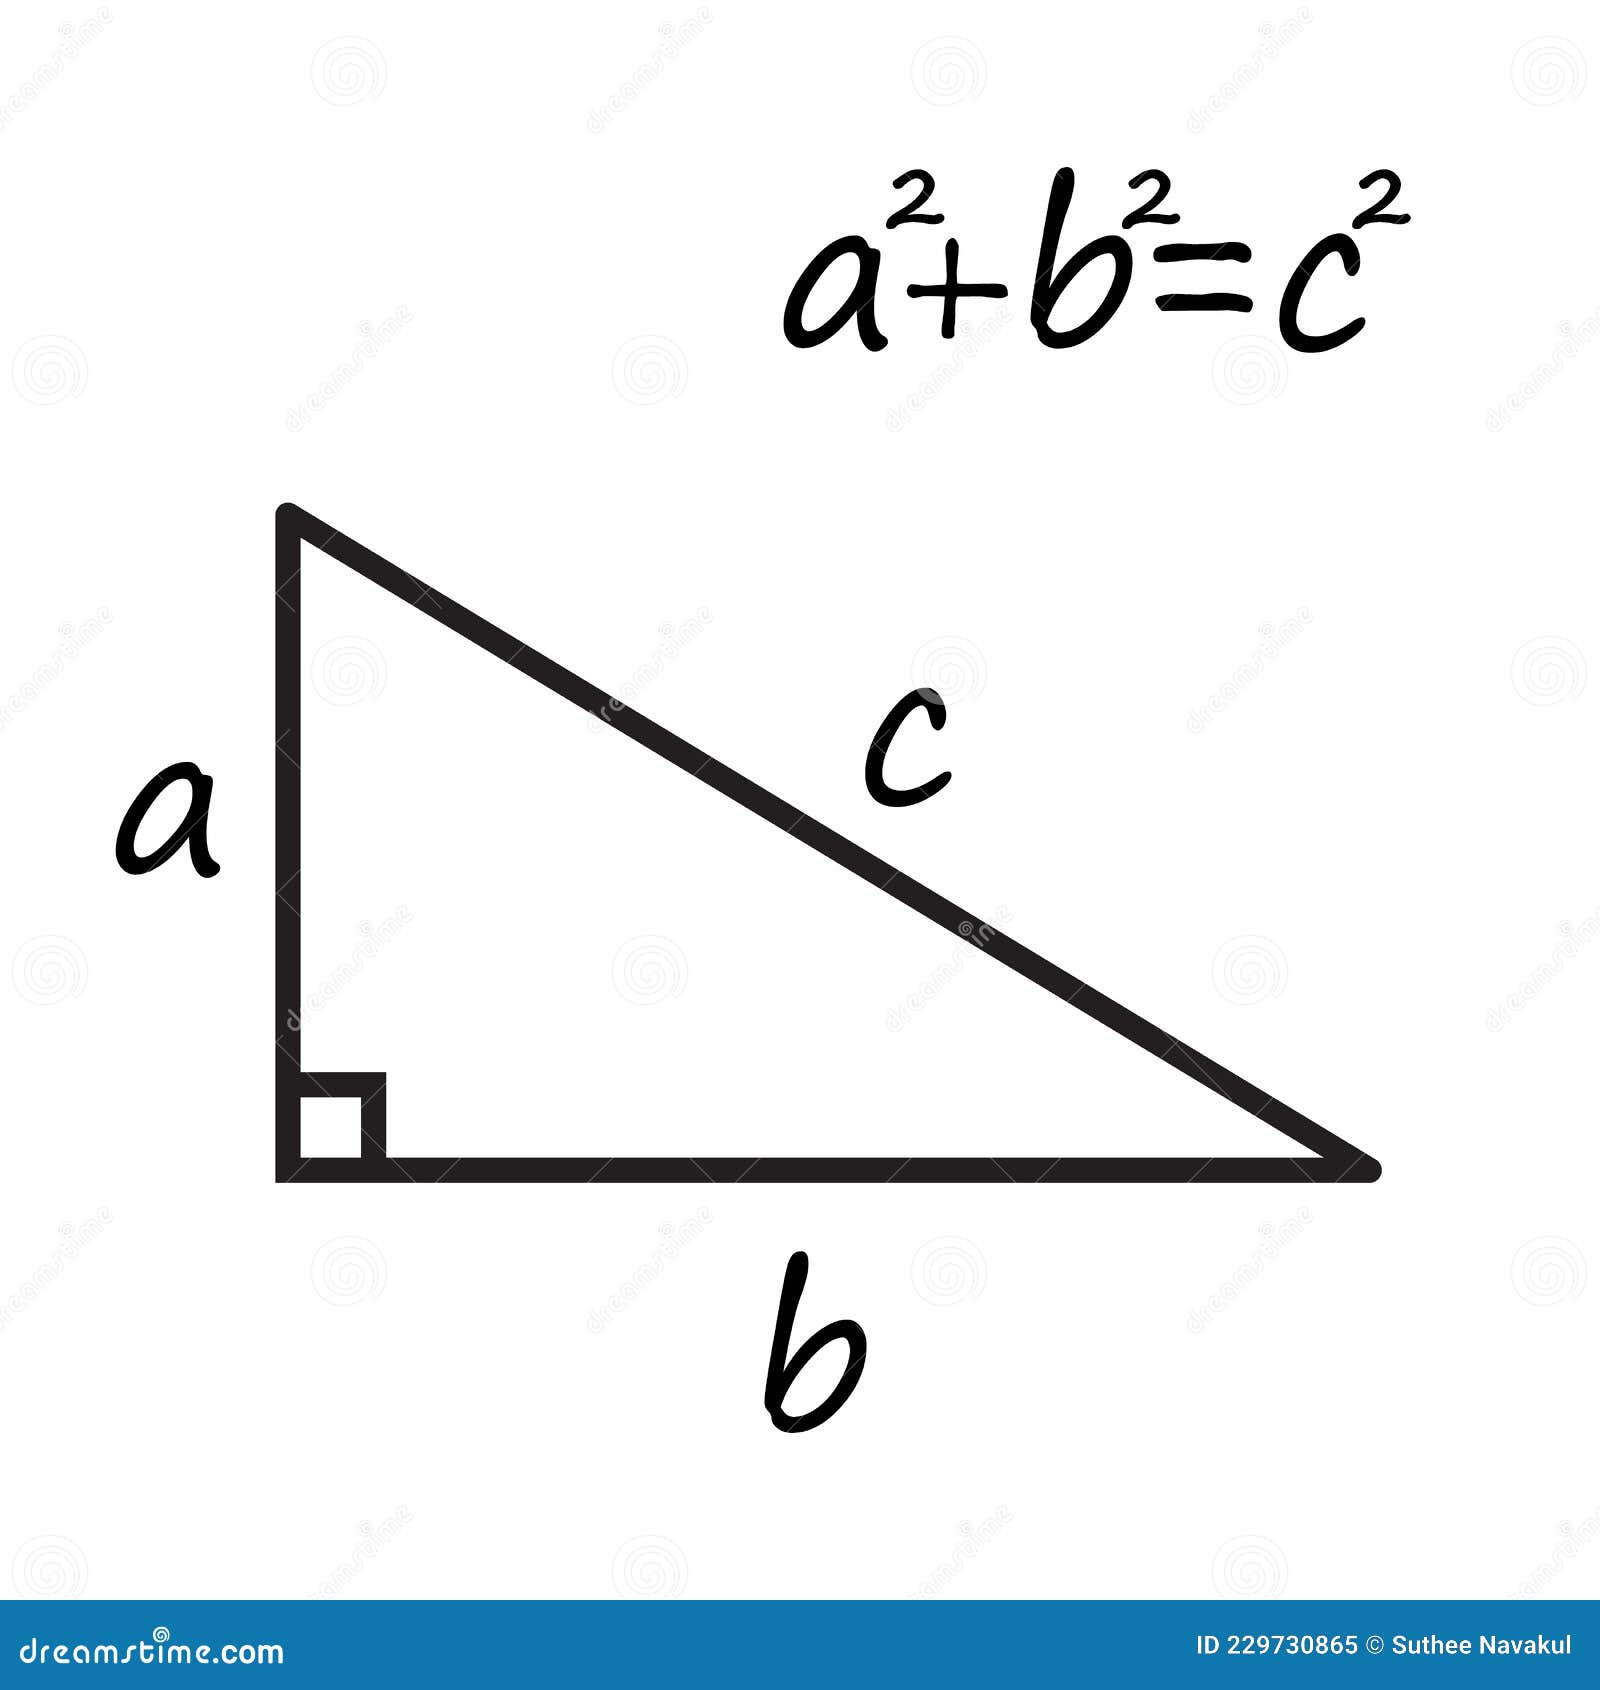 Pythagorean theorem formula